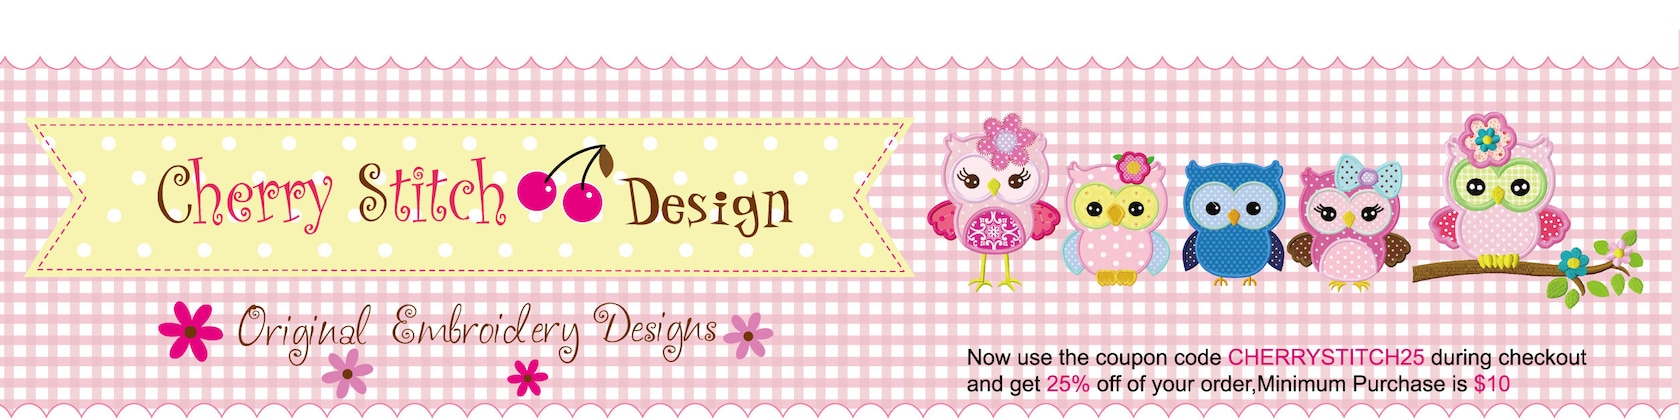 Original Machine Embroidery Designs Digital By Cherrystitchdesign,Portfolio Design For Students Folder